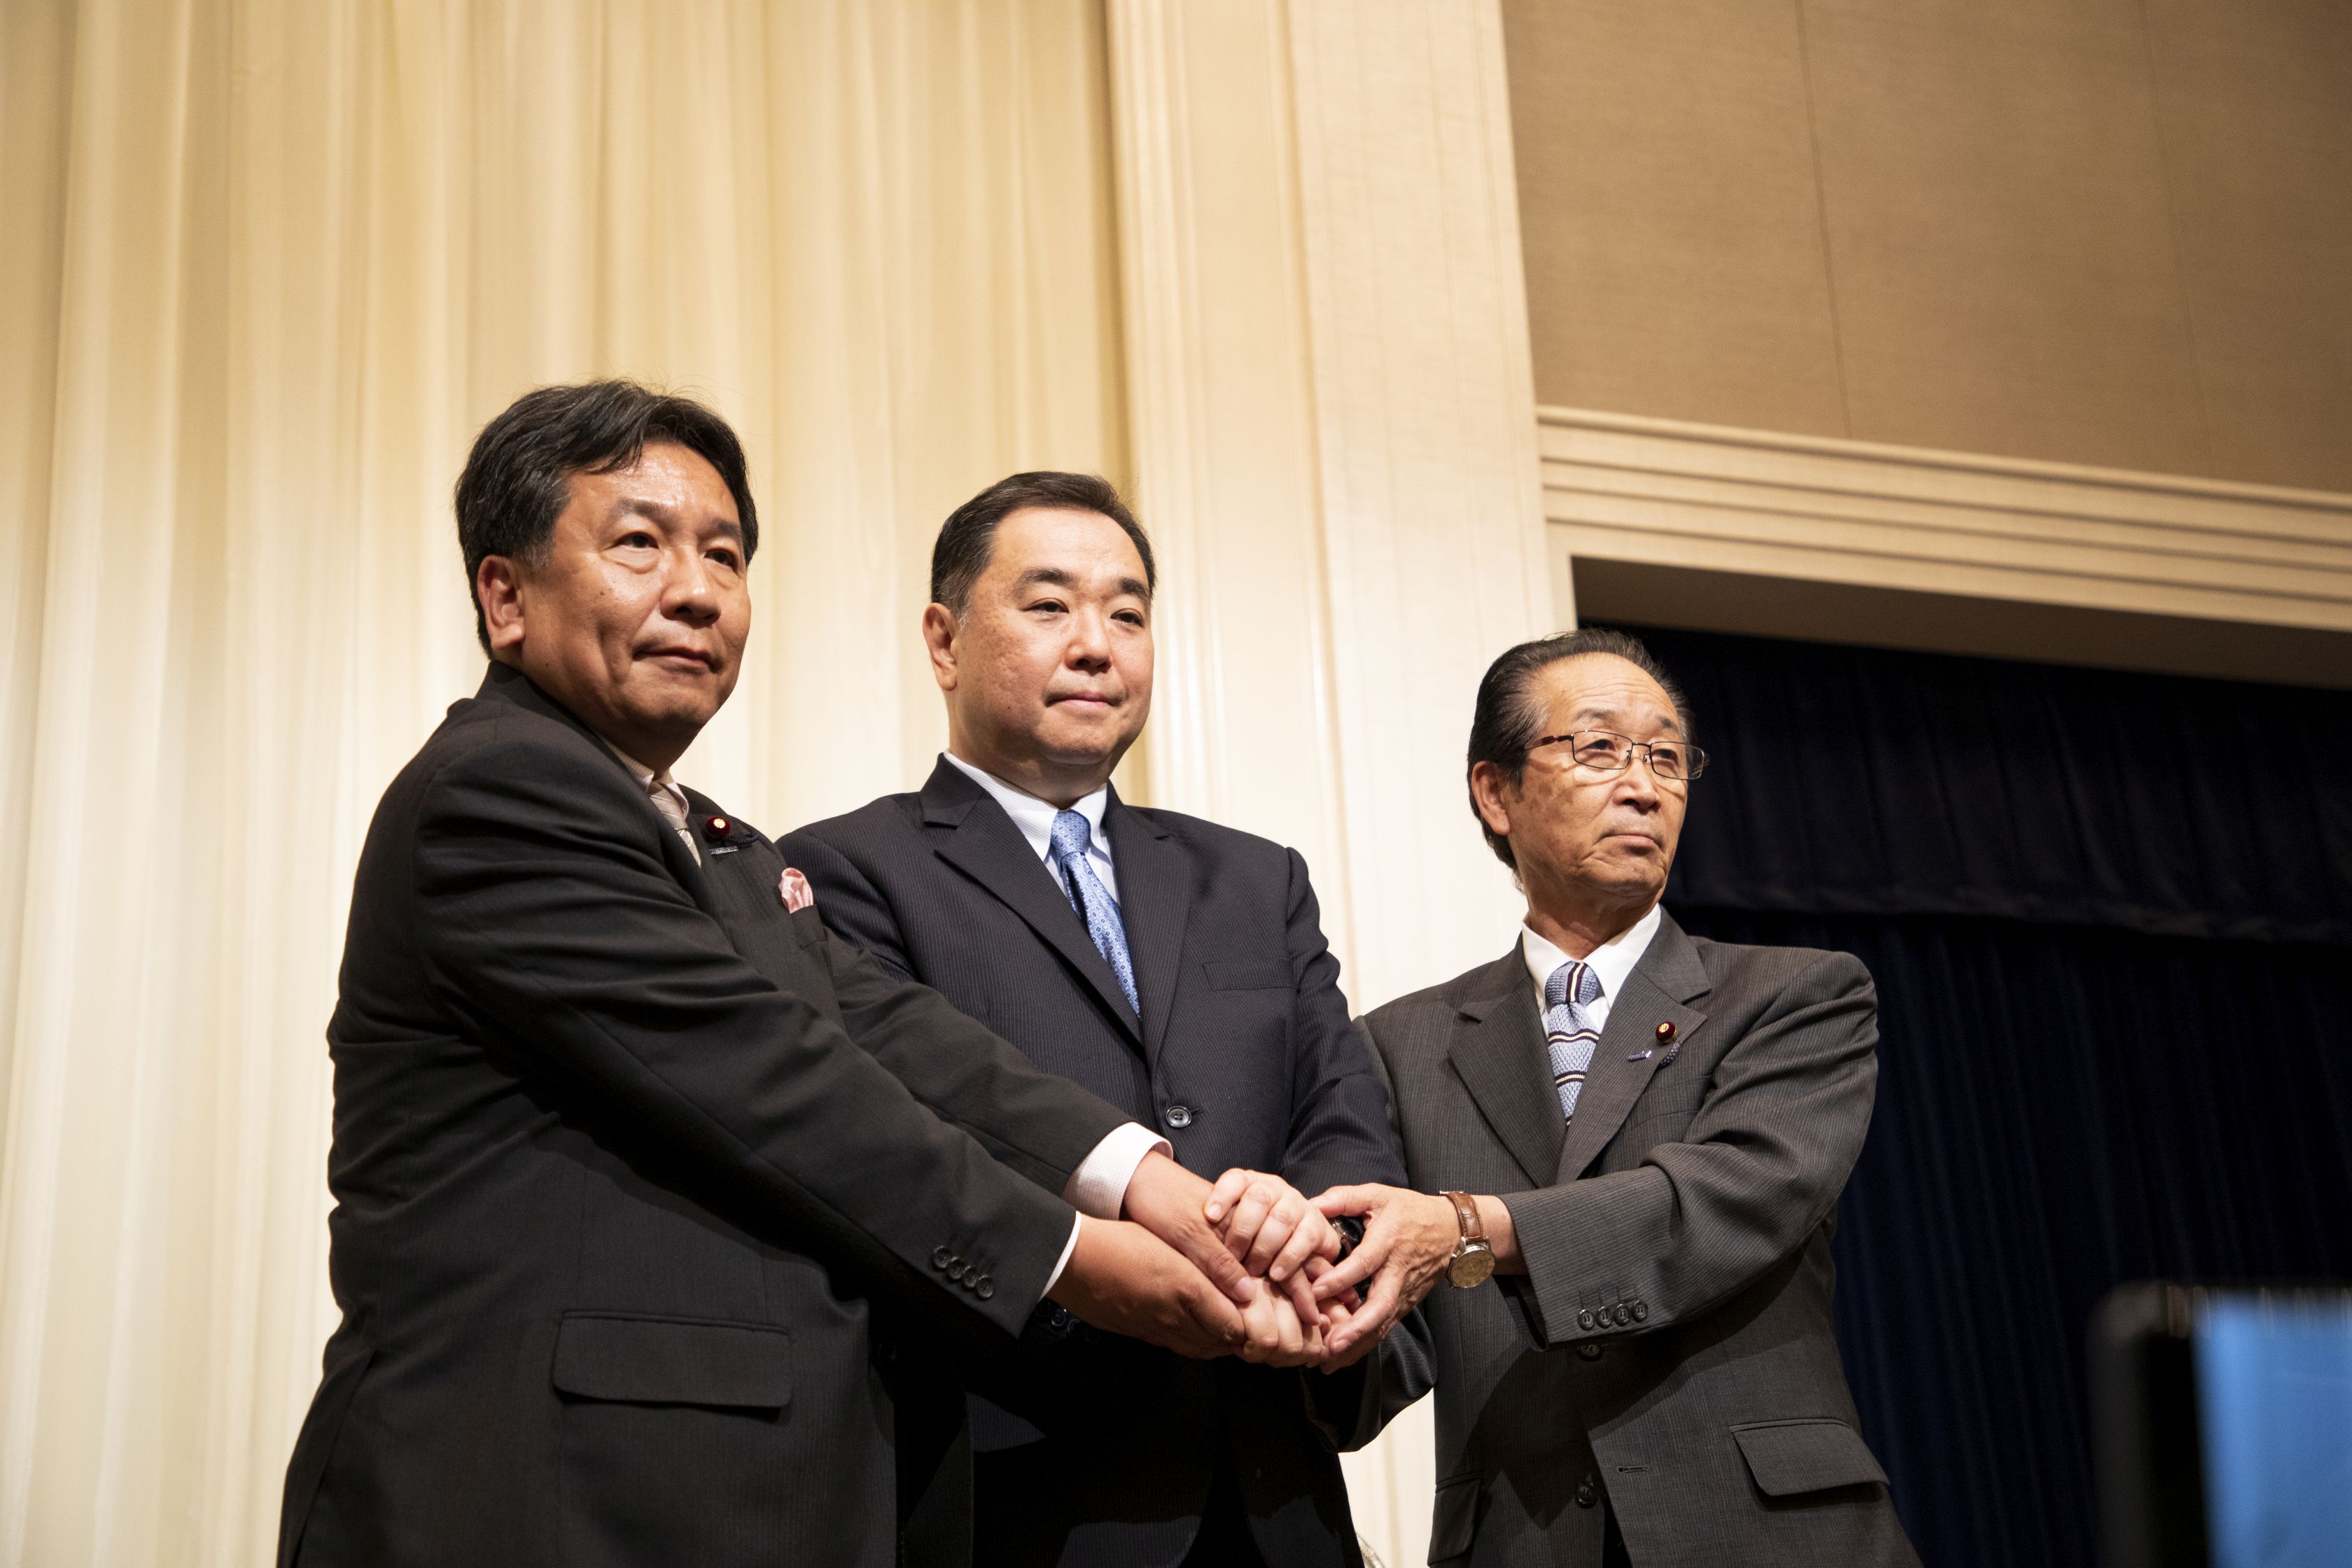 左から枝野代表、徳川候補予定者、佐々木県連代表